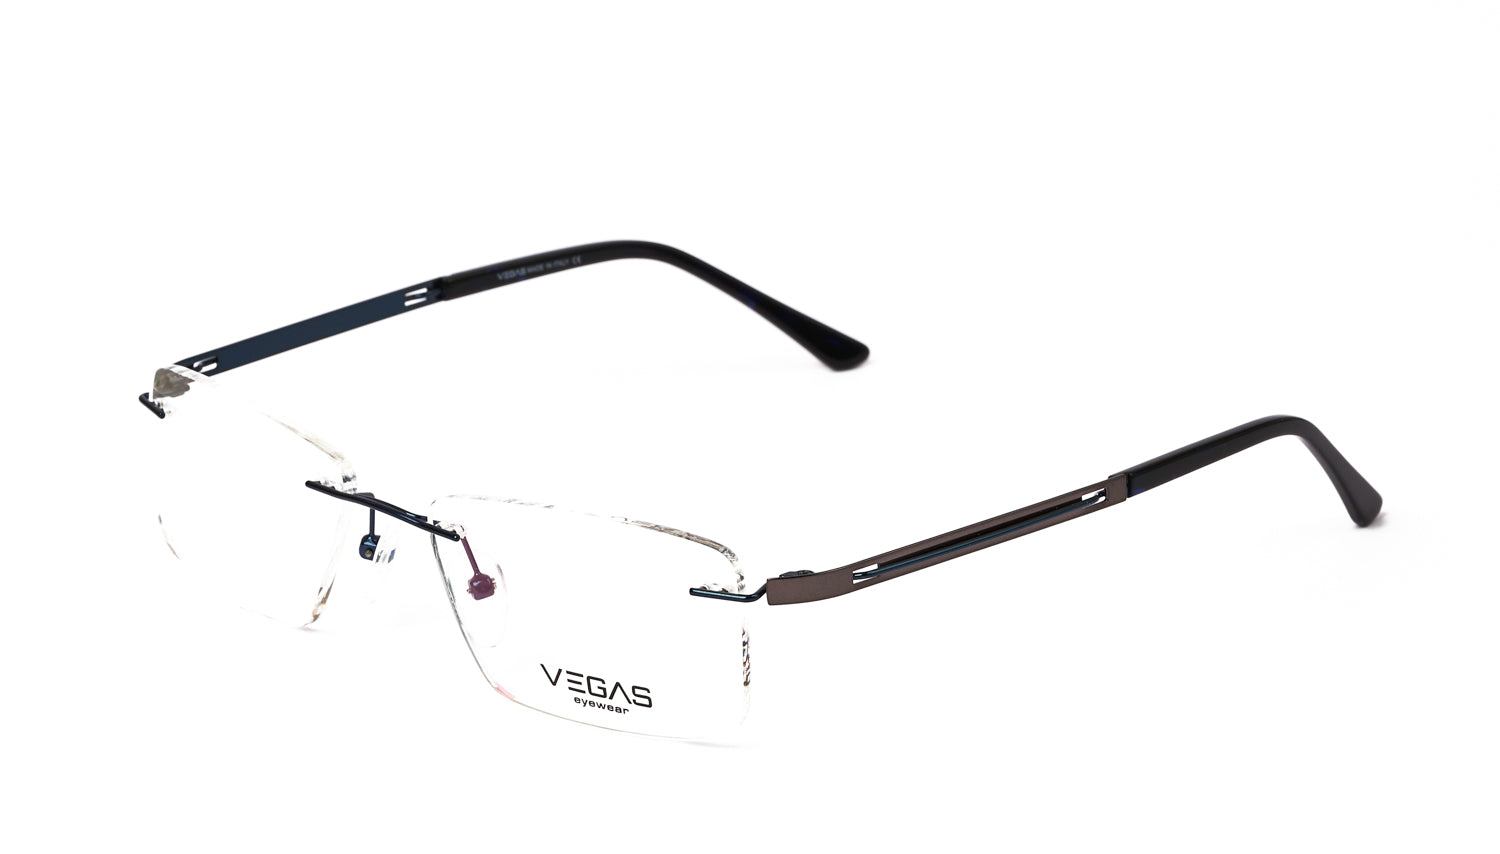 VEGAS 300005 - COC Eyewear